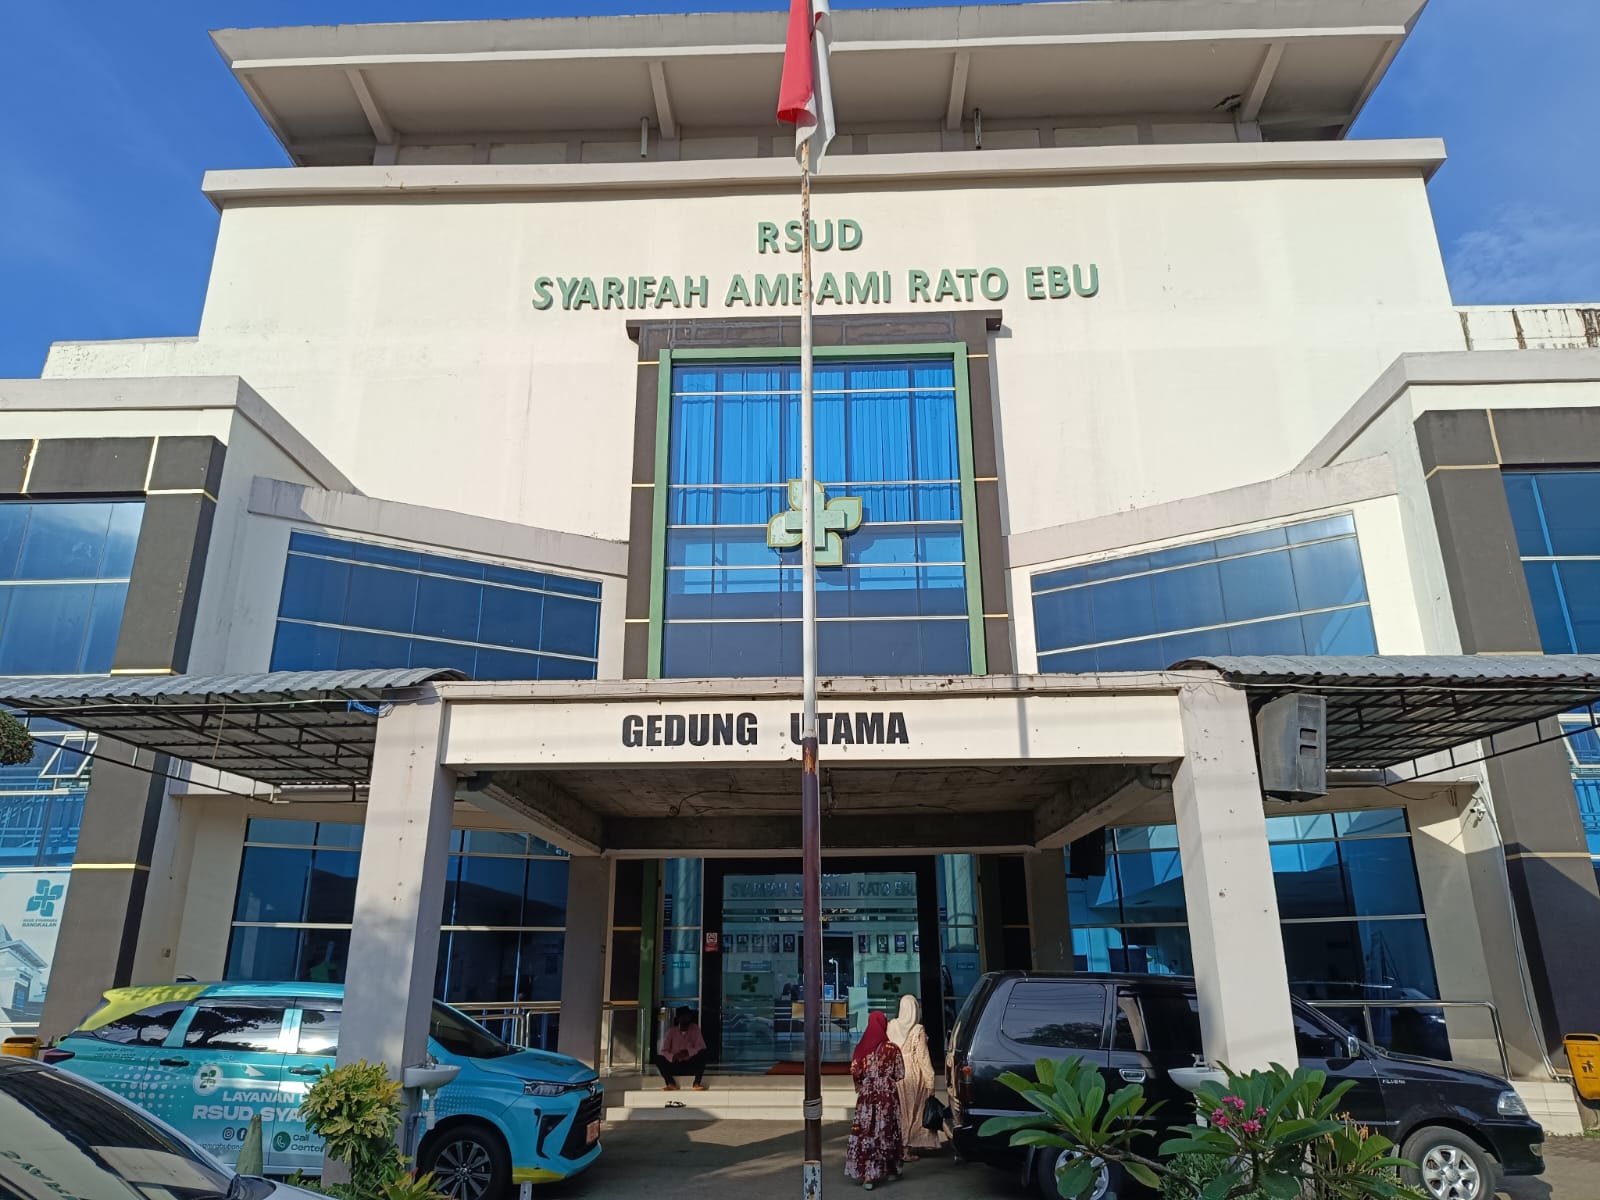 Rumah Sakit Umum Daerah Syarifah Ambami Rato Ebu Syamrabu (RSUD Syamrabu) Bangkalan, Madura, pada Jumat (29/12/2023). Foto: Risky suarasurabaya.net